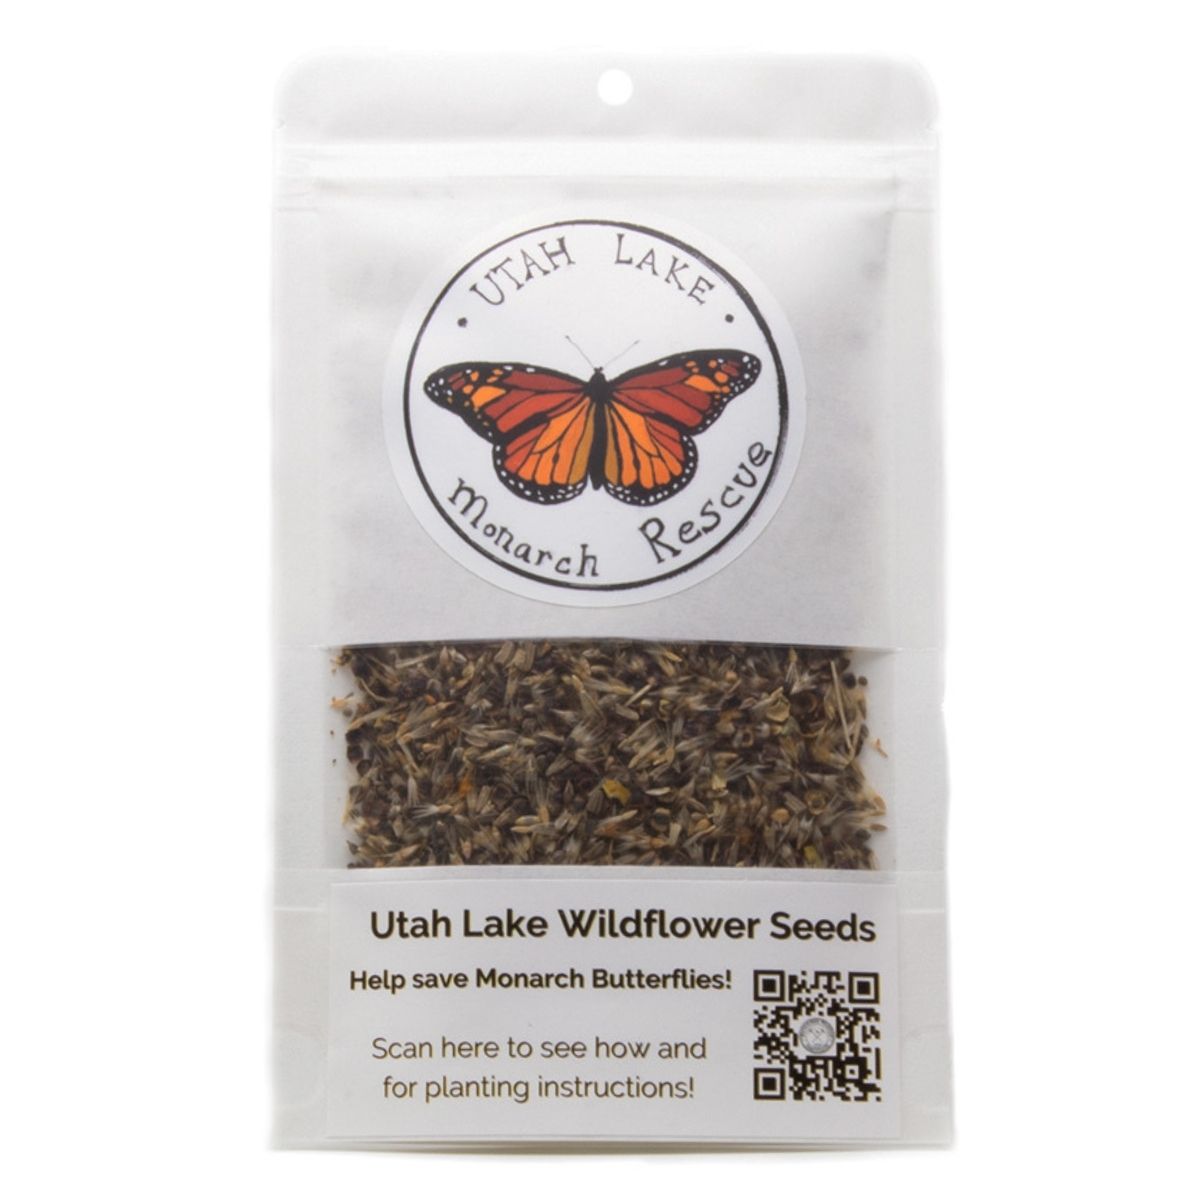 Earth Day Utah Lake Wildflower Seeds